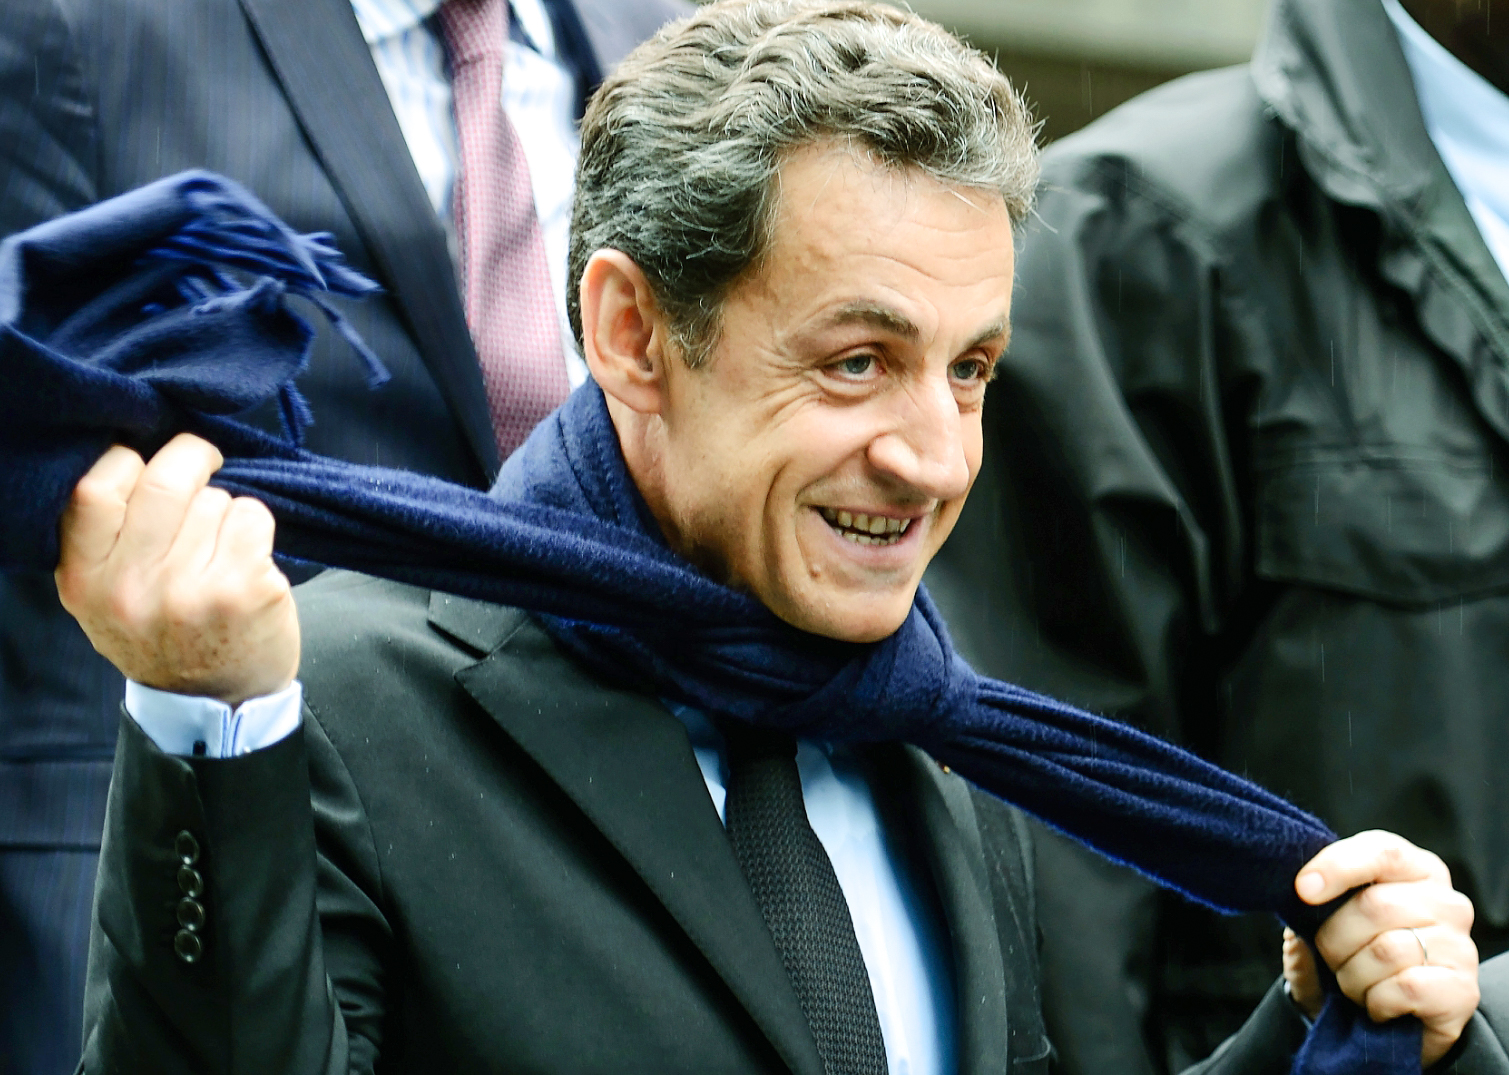 Глава УЕФА Мишель Платини решил изменить своё решение в пользу Катара после обеда с Николя Саркози (на фото) и членом королевской семьи Катара